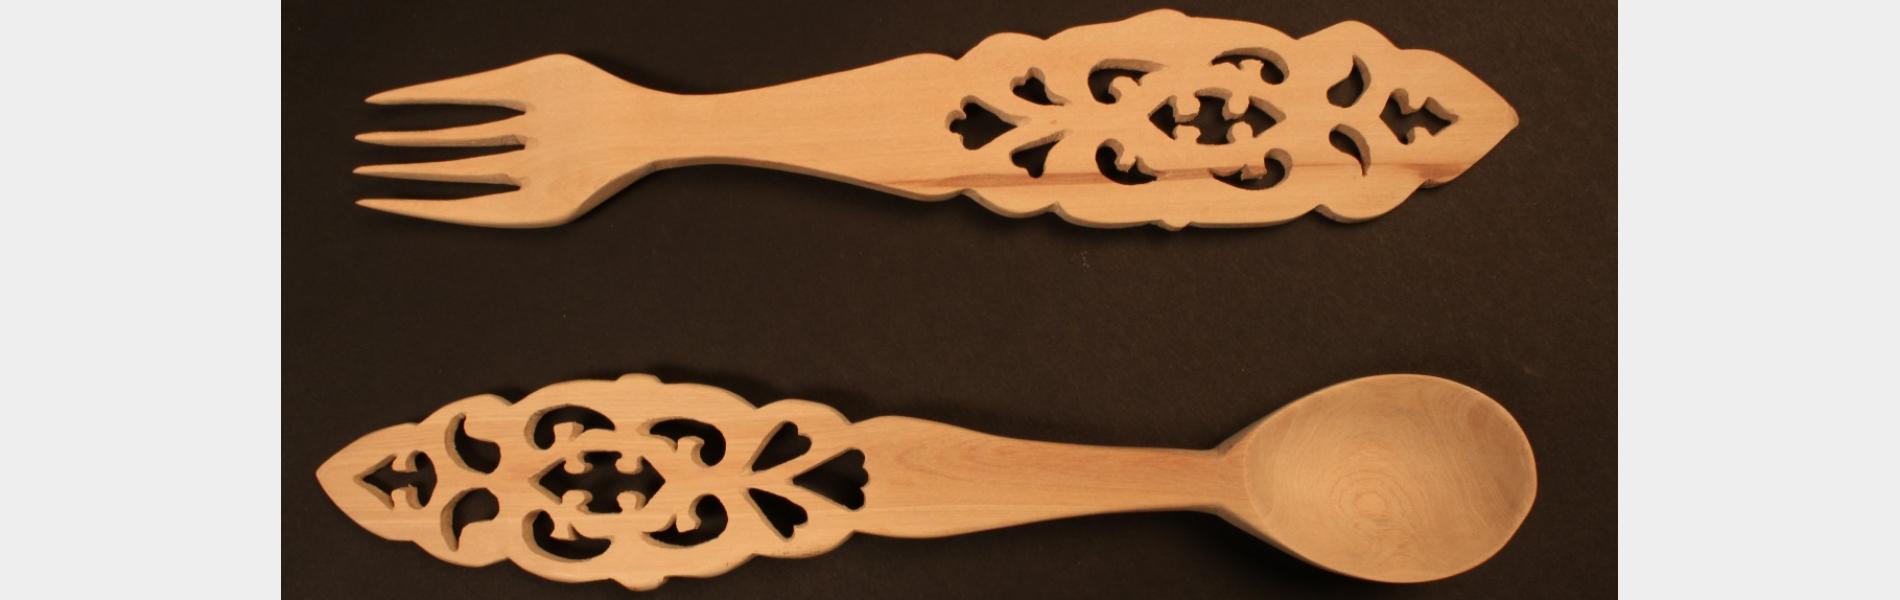 Udayagiri wooden cutlery